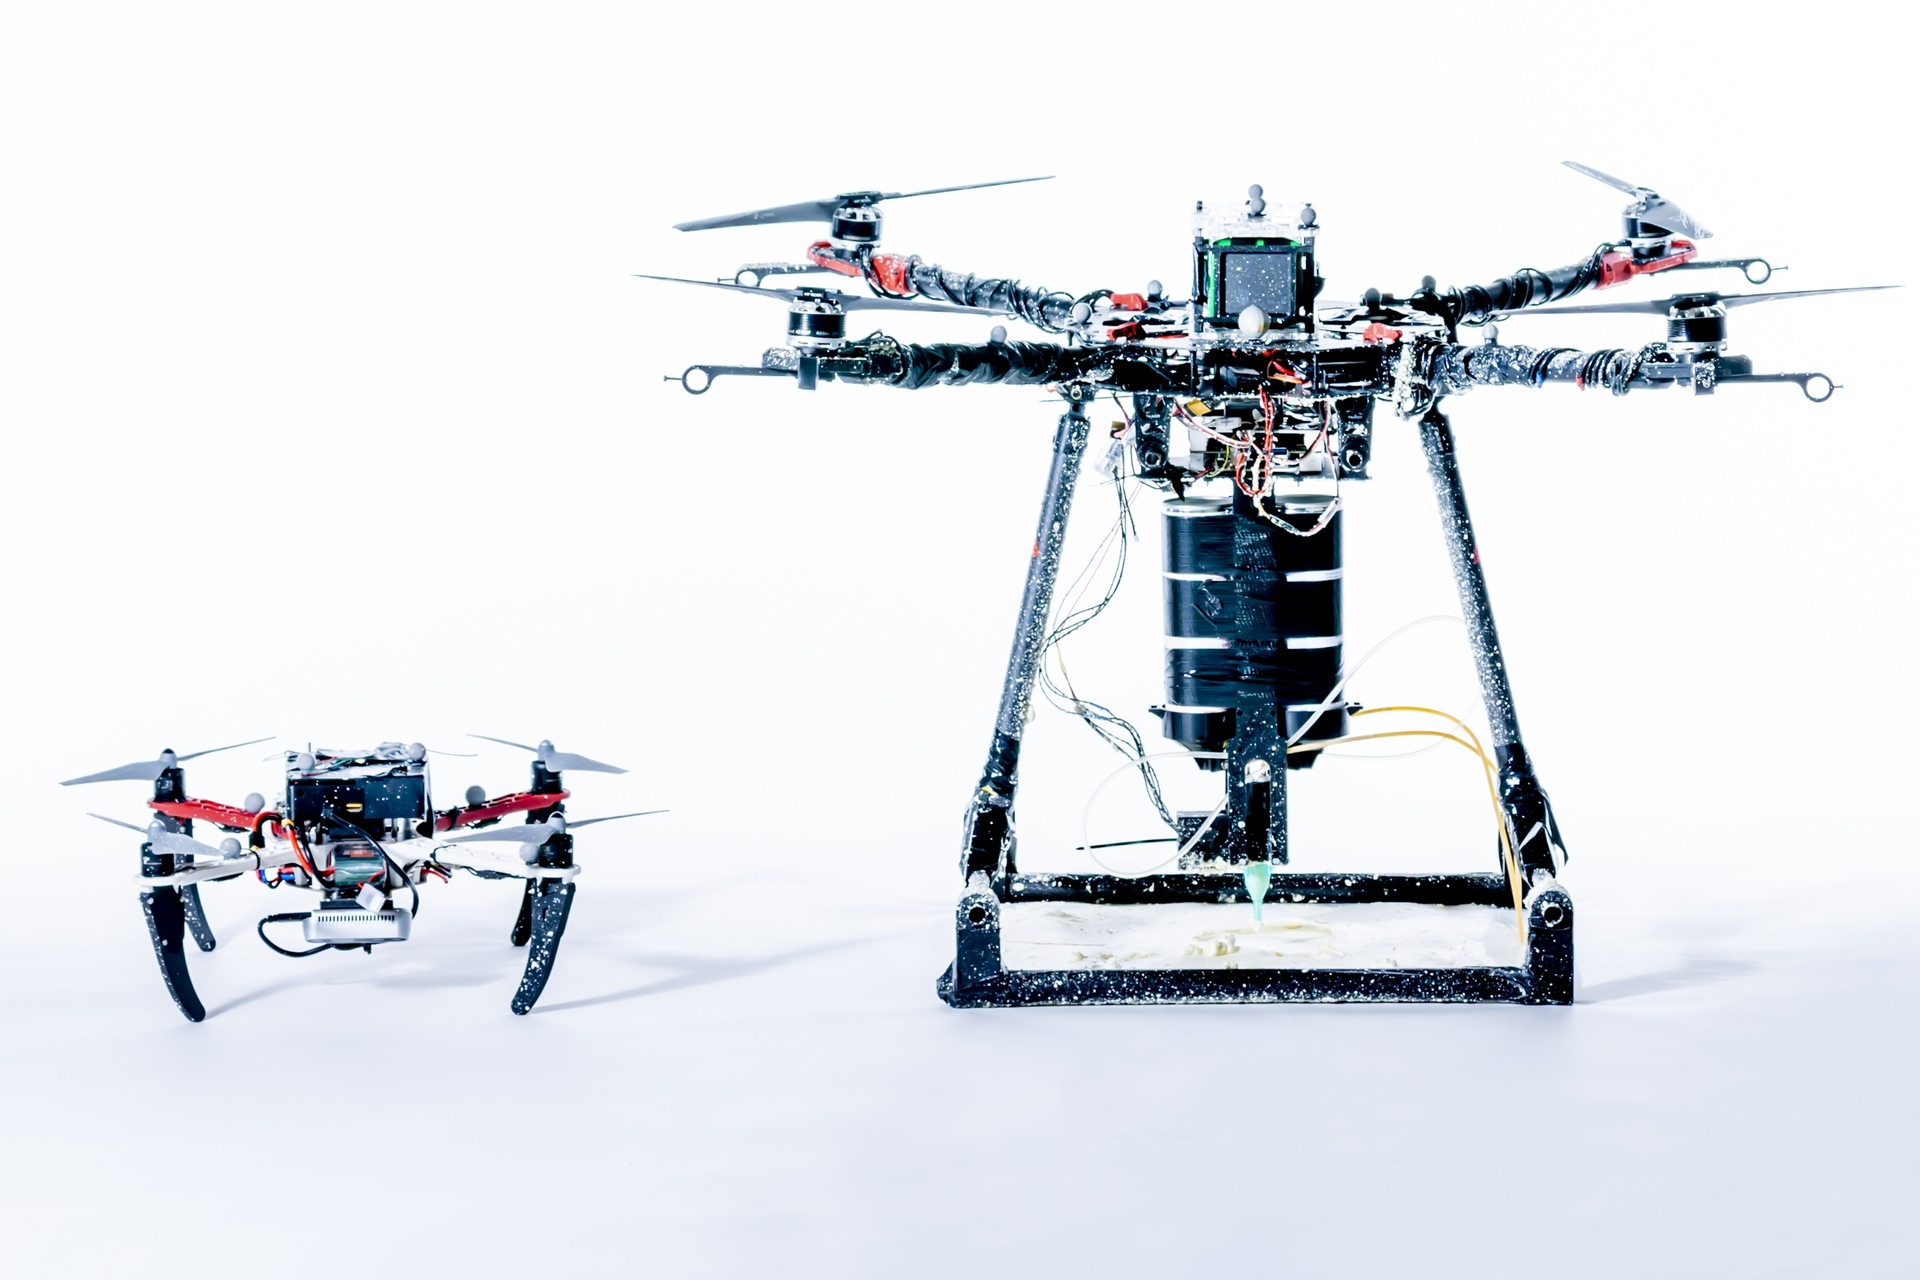 Birgə dronlar: Aerial Additive Manufacturing və ya Aerial-AM vasitəsilə 3D çap